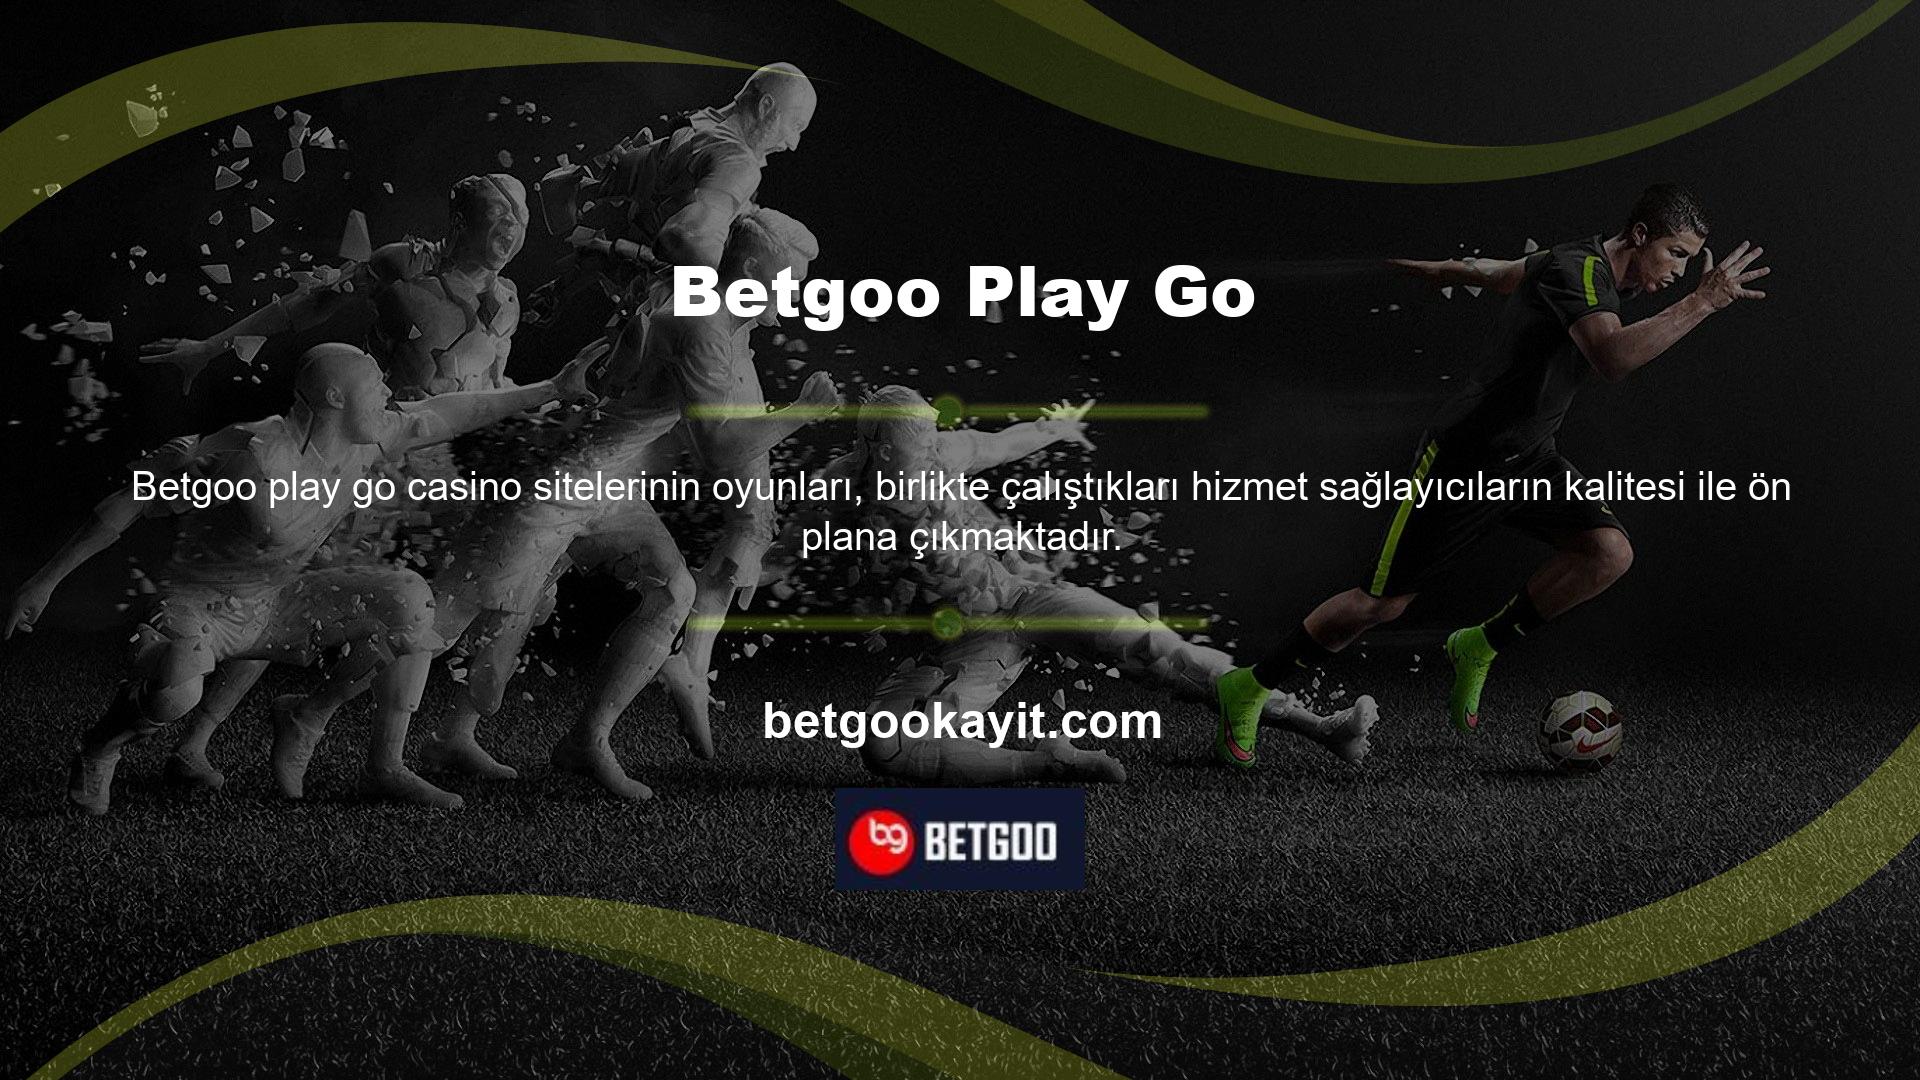 Betgoo, oyun ürünleri pazarında iyi tanınmakta ve halen aktiftir ve birlikte çalıştığı casino operatörlerini dikkatle seçmektedir